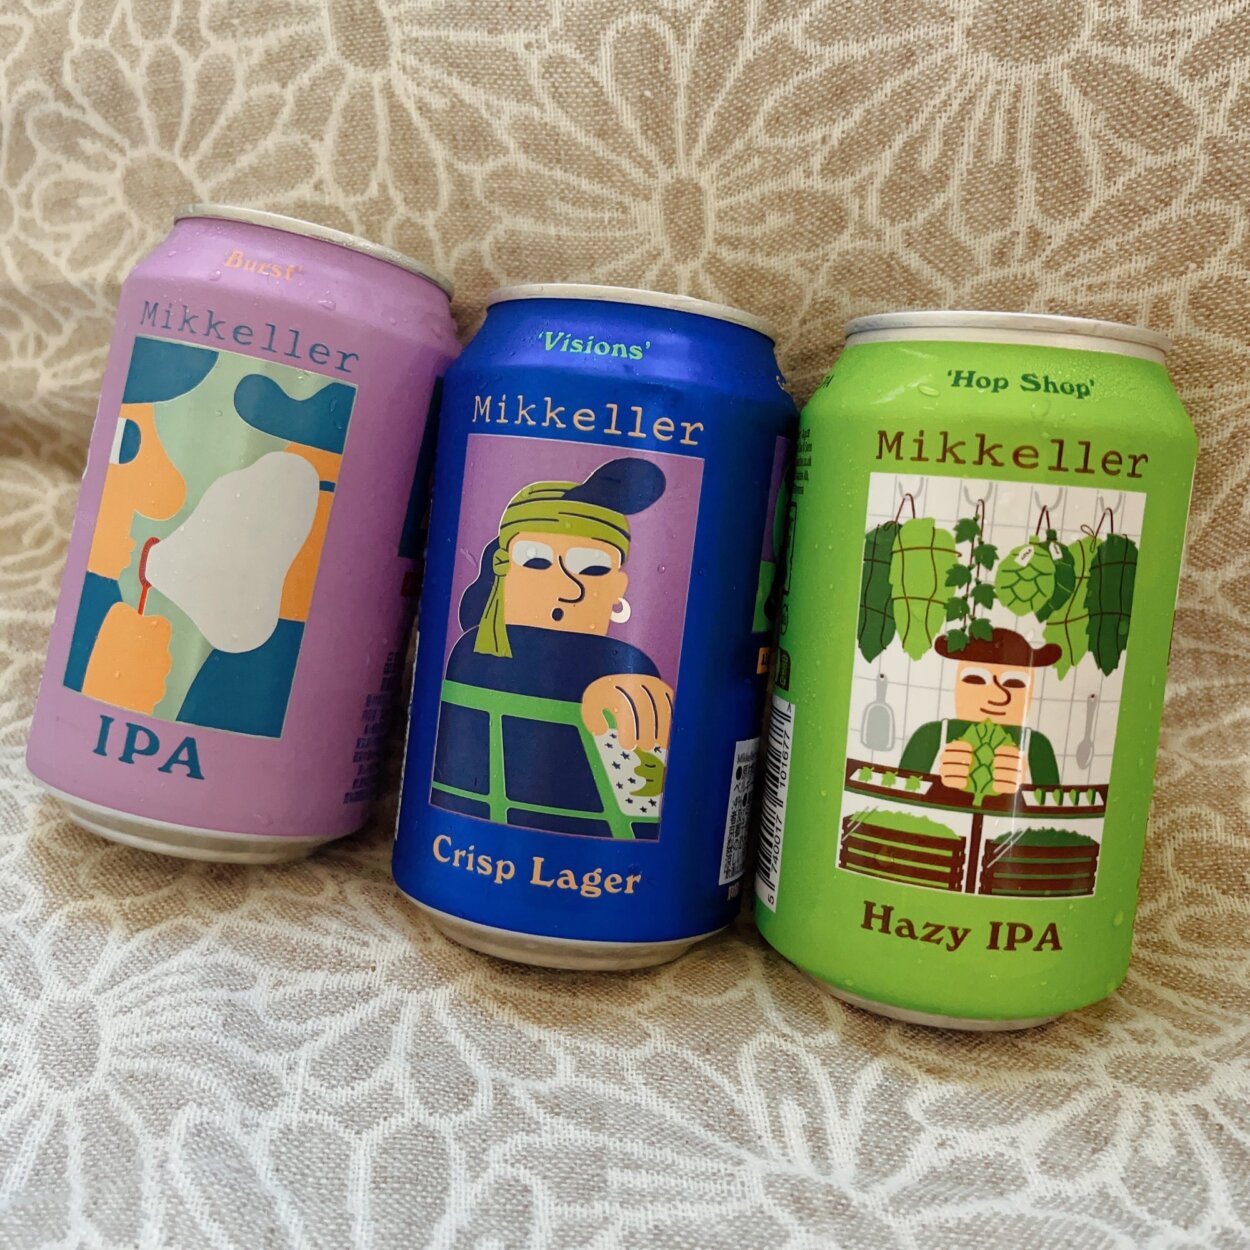 ミッケラー（デンマーク）のビール。左から「バースト IPA」、「ヴィジョンズ ラガー」、「ヘイジー IPA」